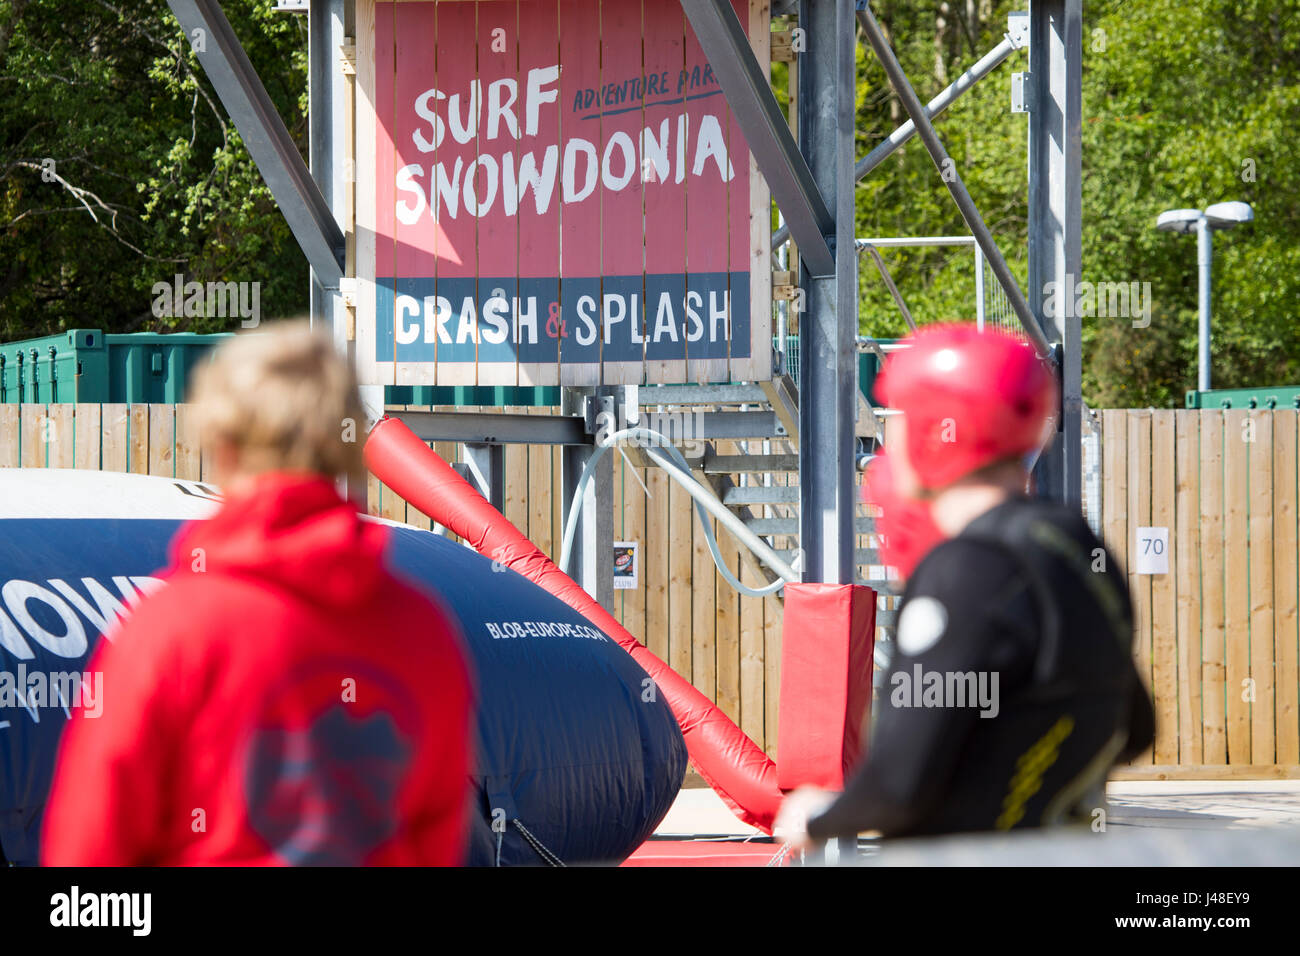 Les visiteurs et la garde à la vie populaires Snowdonia surf surf artificiel lake attendant leur tour sur le crash et Splash dans le Nord du Pays de Galles Banque D'Images